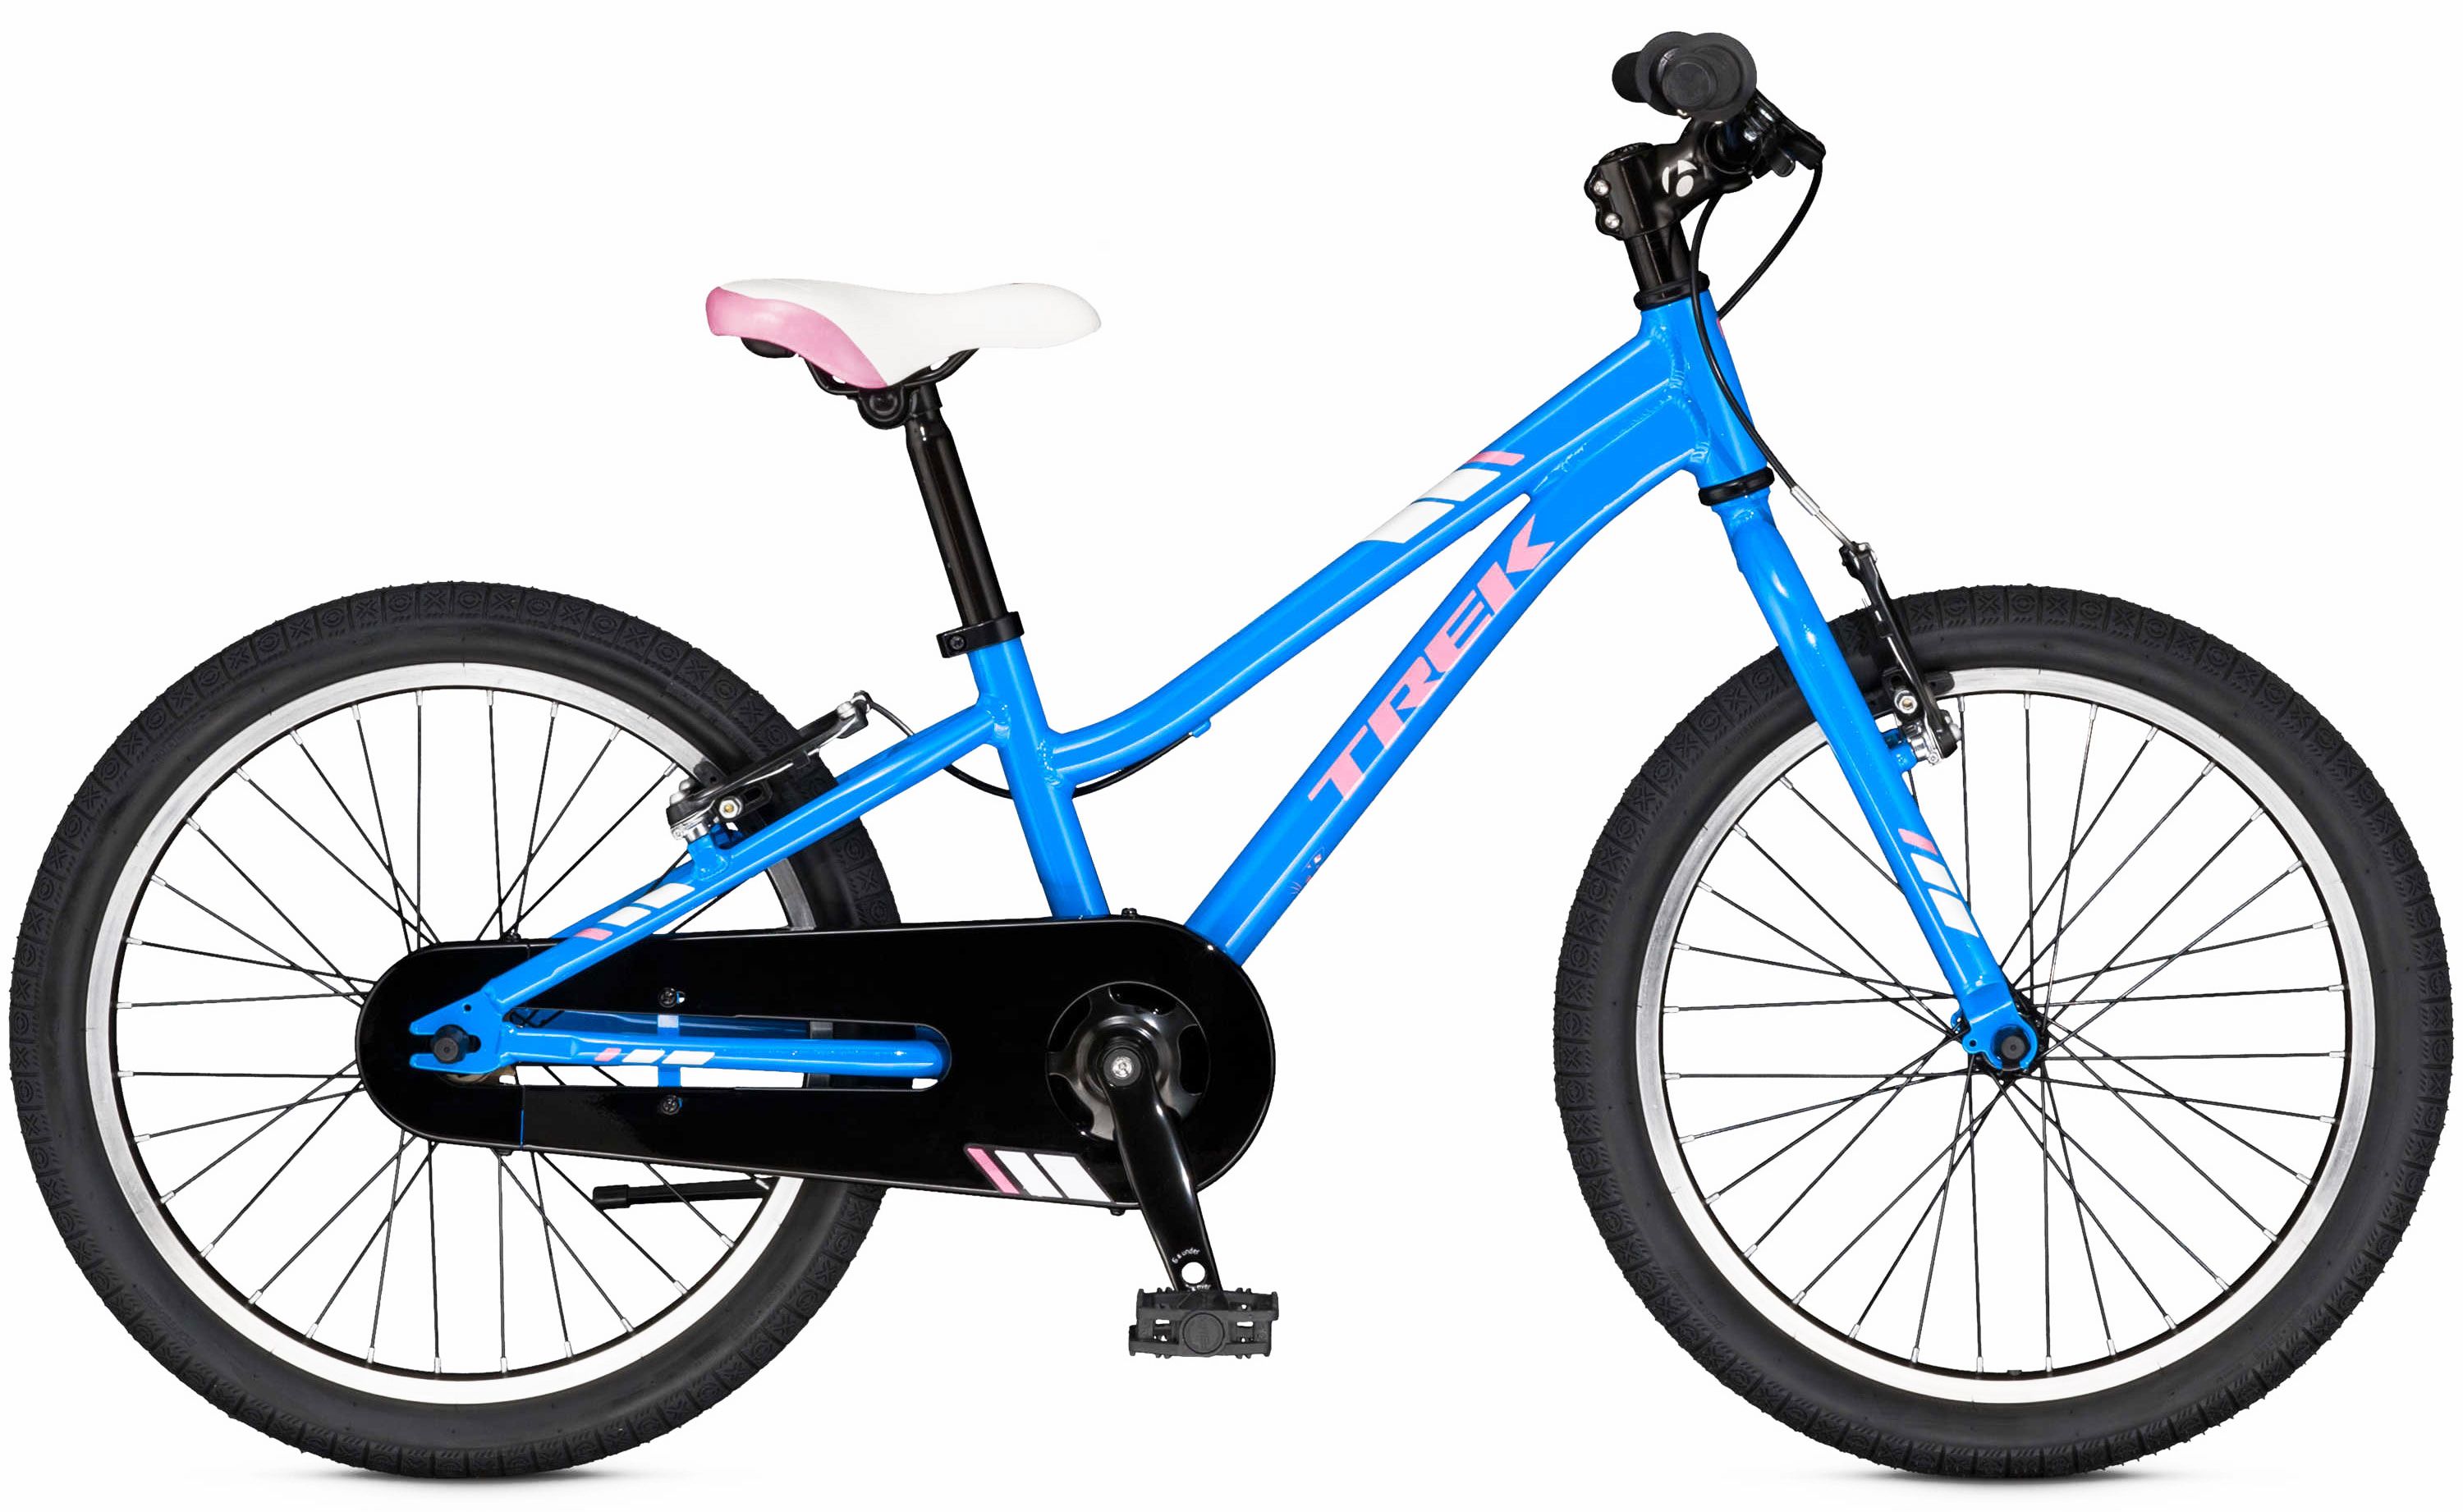  Отзывы о Детском велосипеде Trek PreCaliber 20 SS Girls 2016